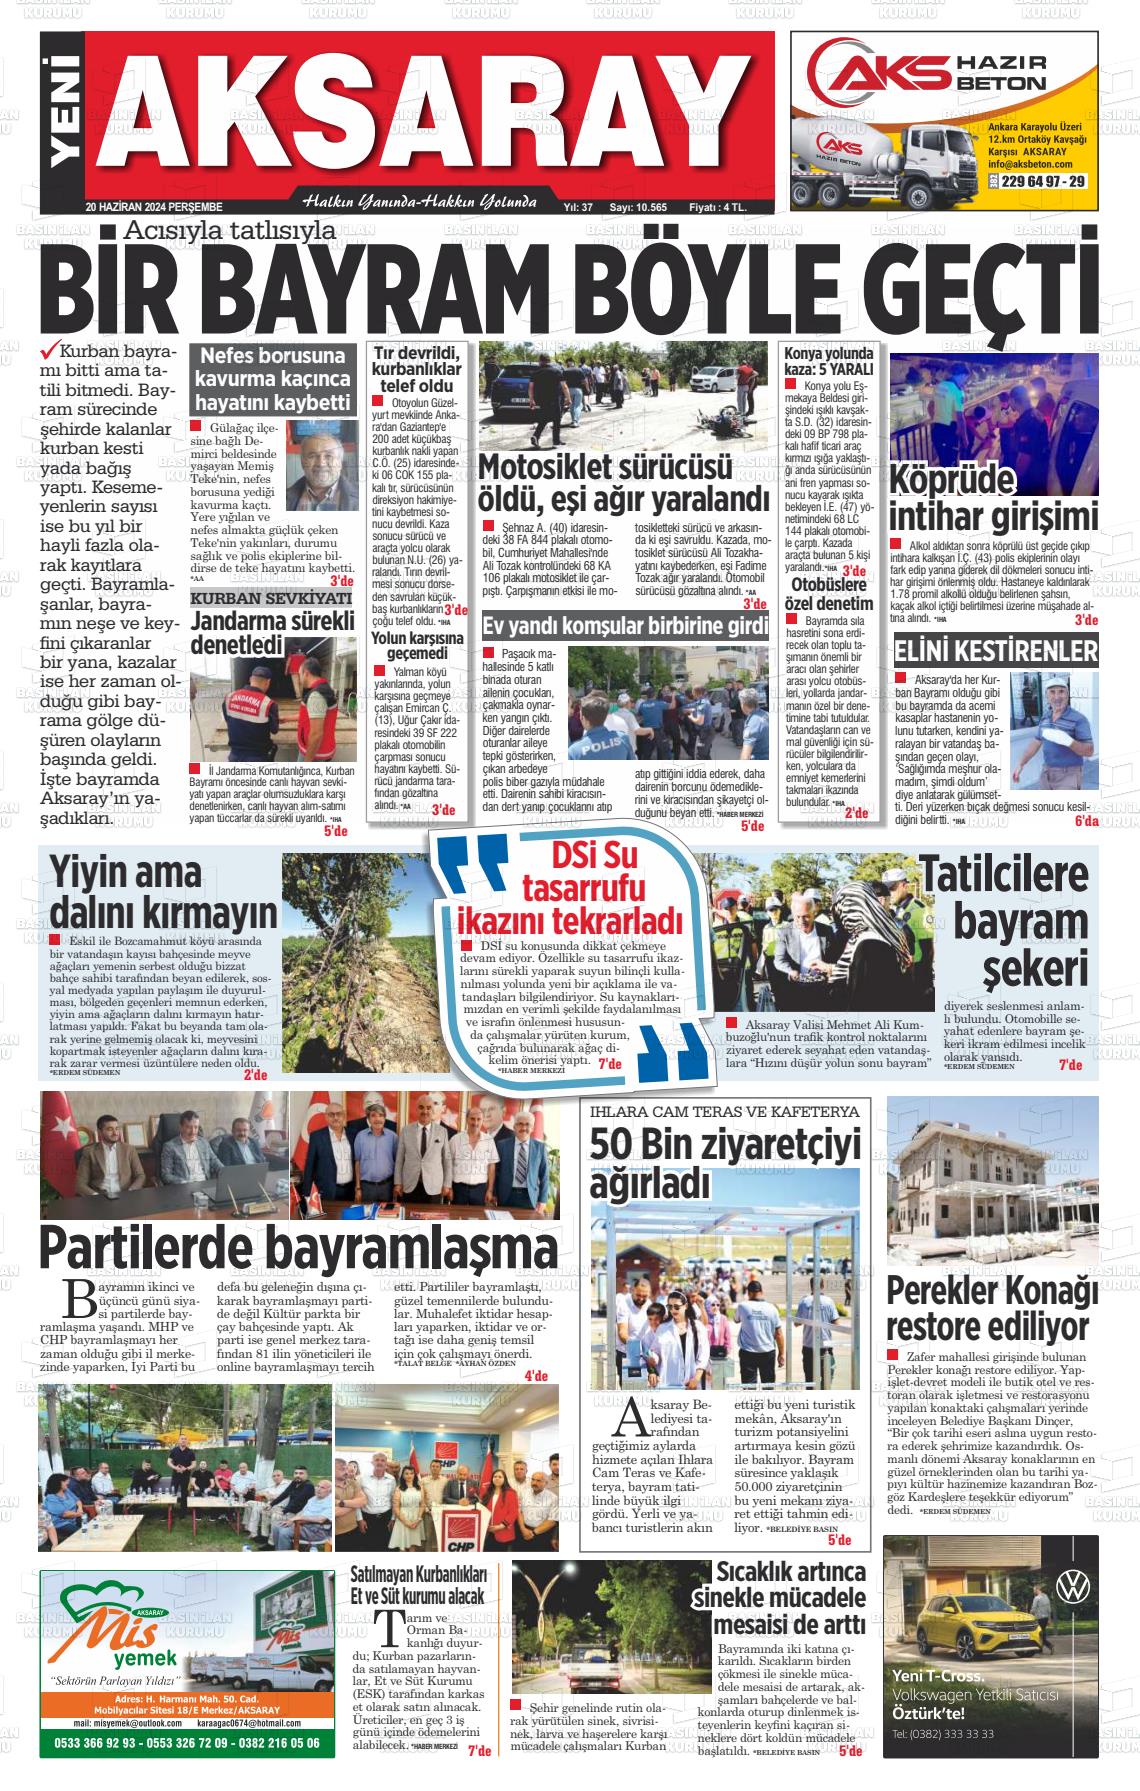 YENİ AKSARAY Gazetesi